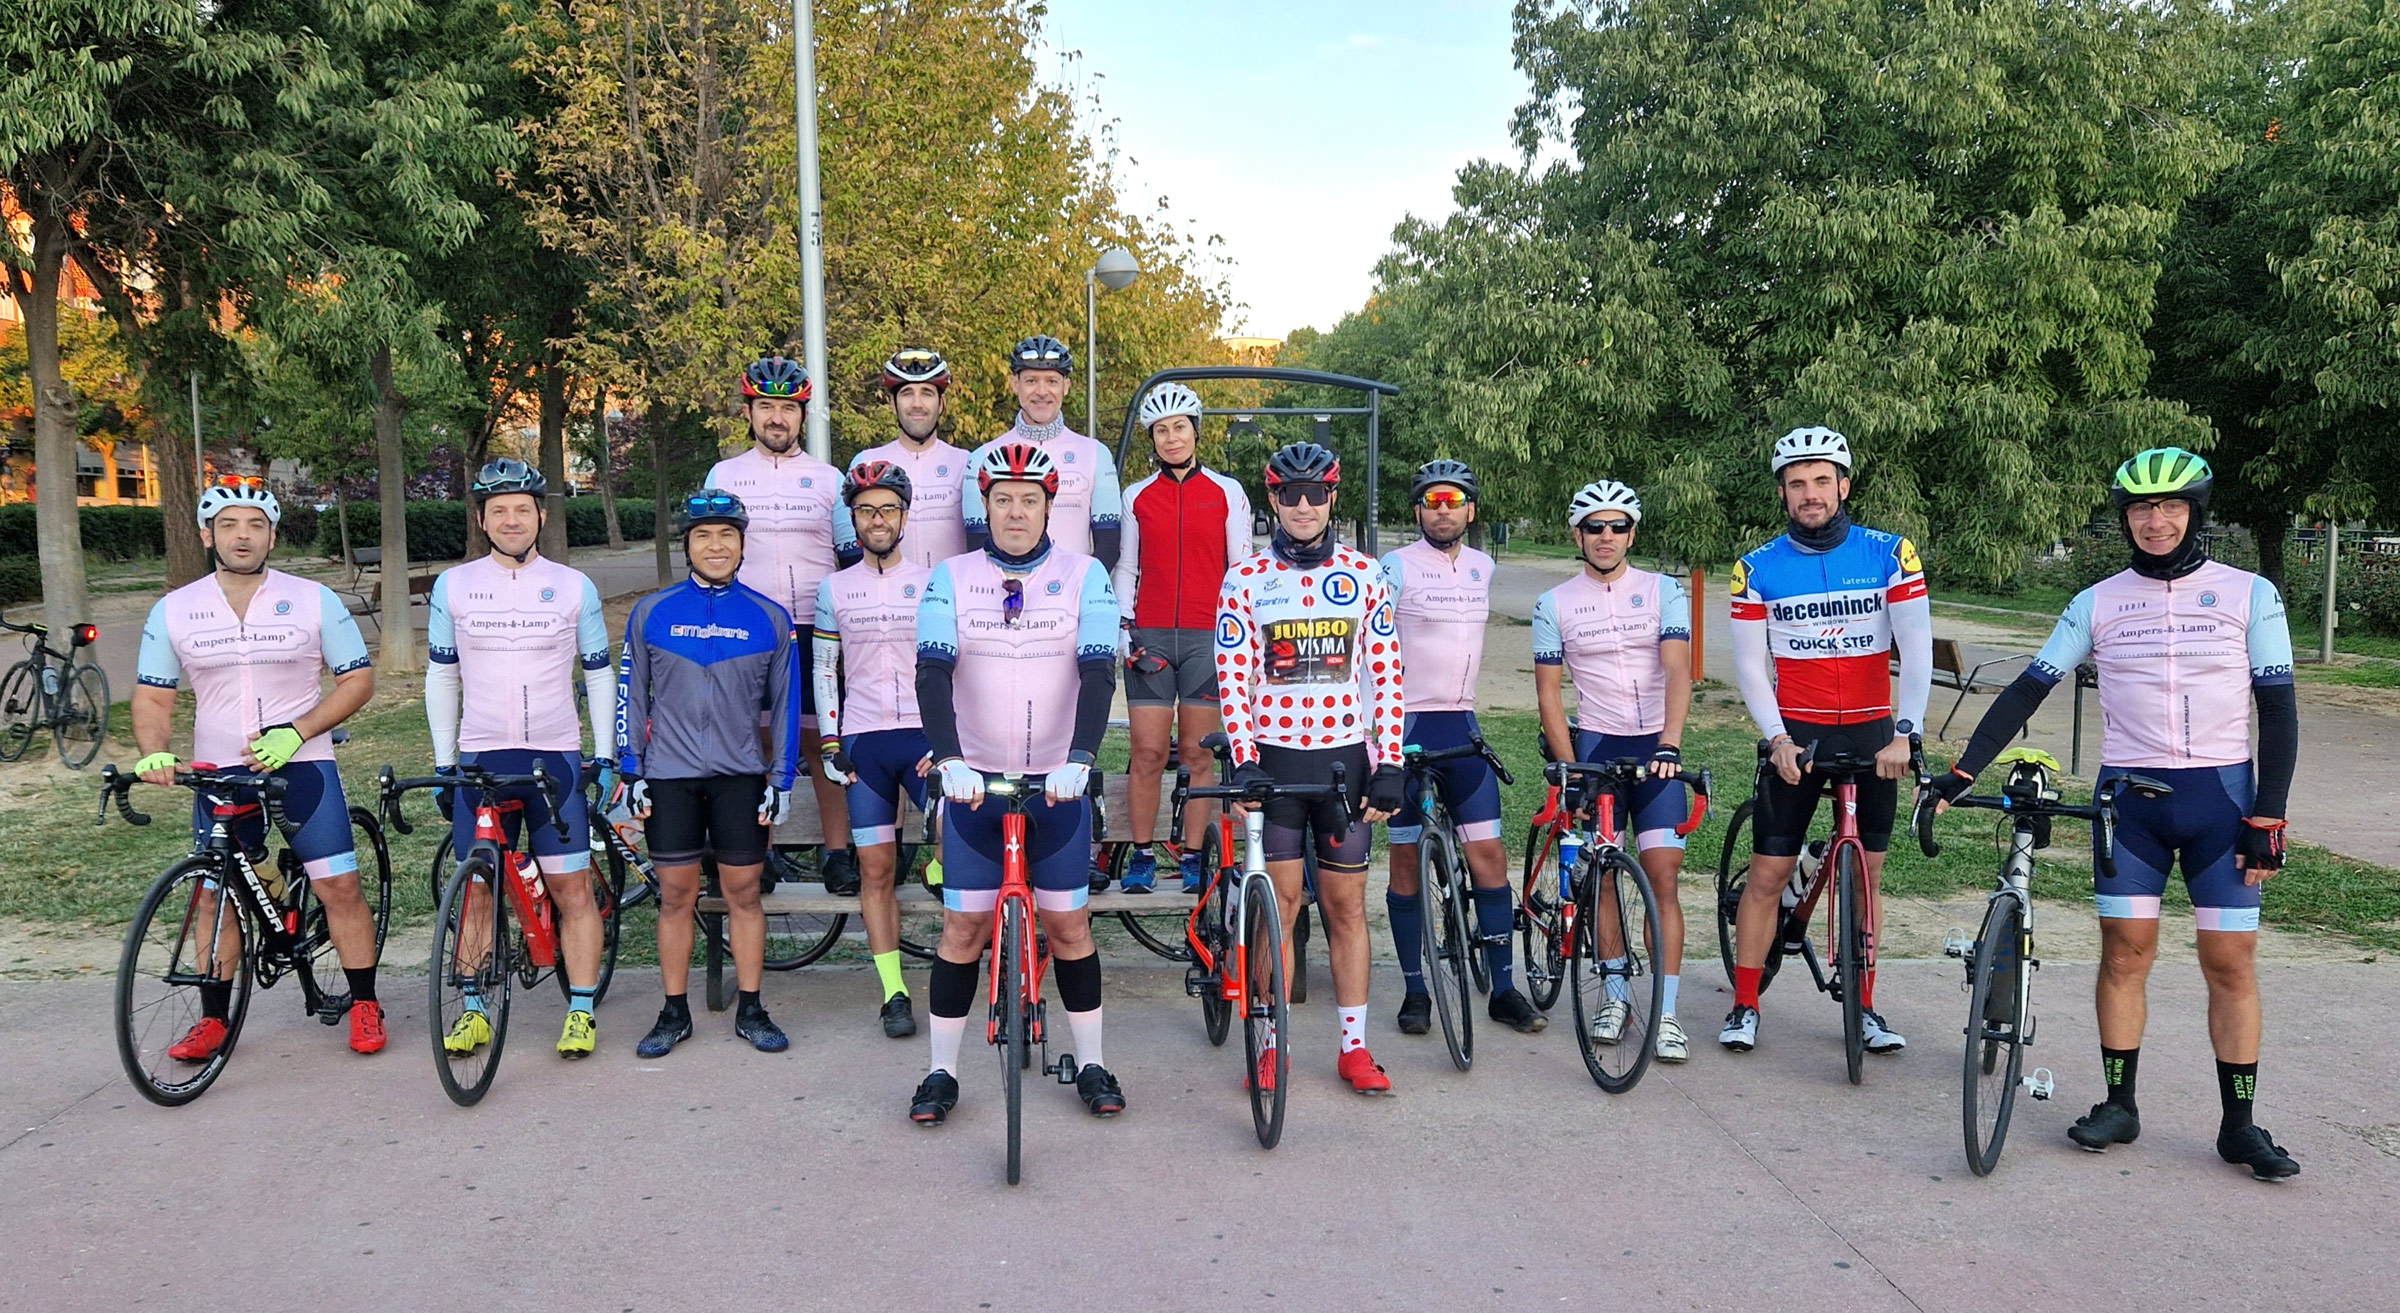 Rosastur club ciclista de Las Rosas